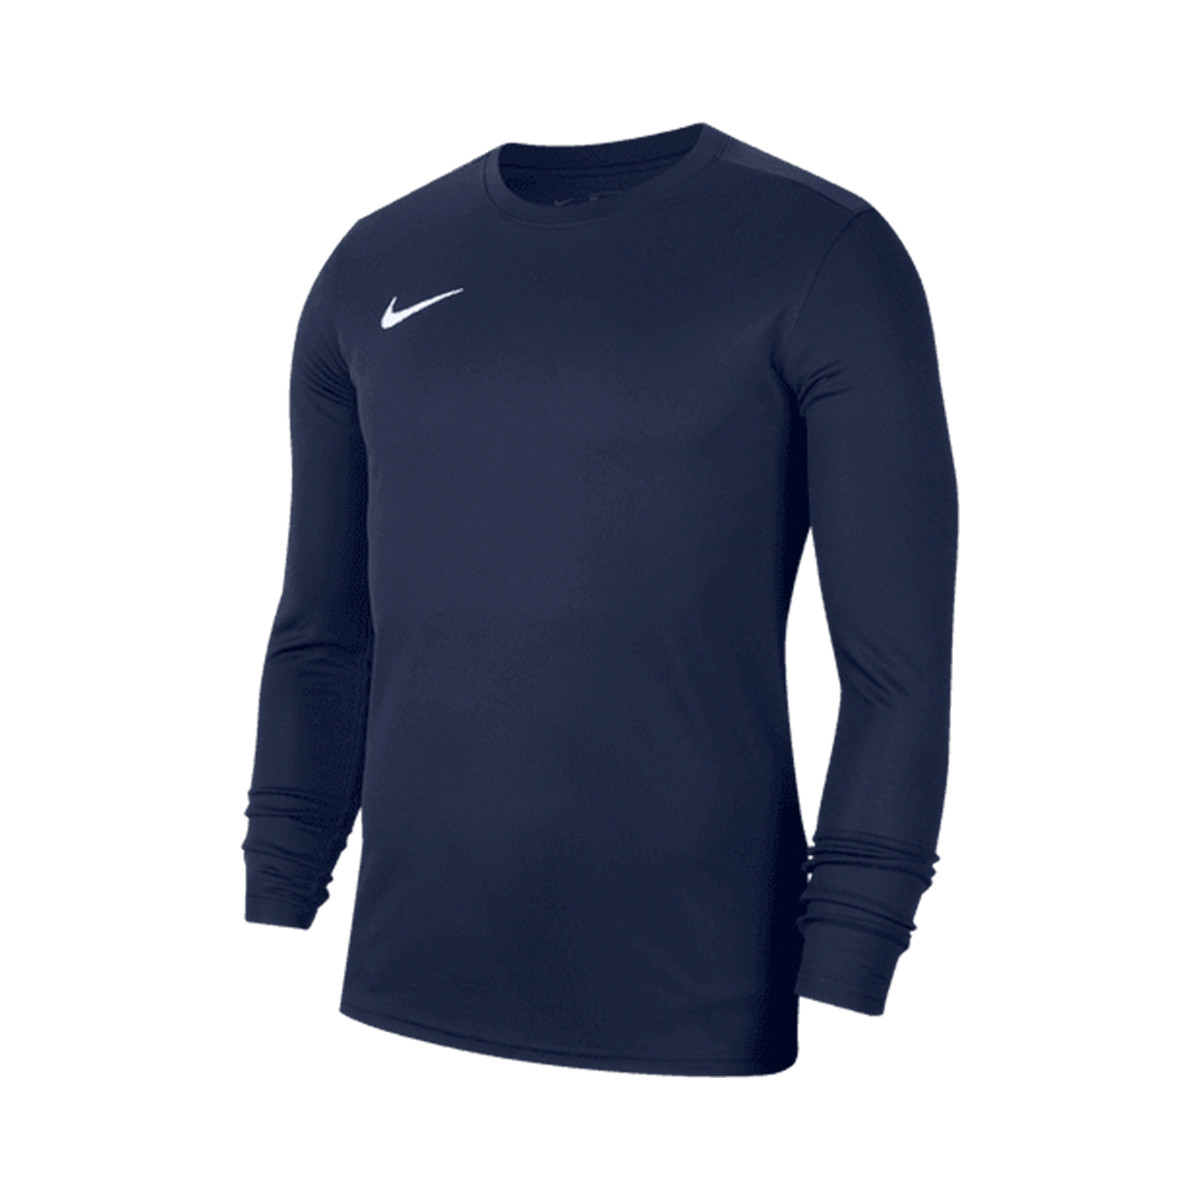 Camiseta Nike GFA Nike Hypercool Compression LS PR Midnight navy-Cool grey Fútbol